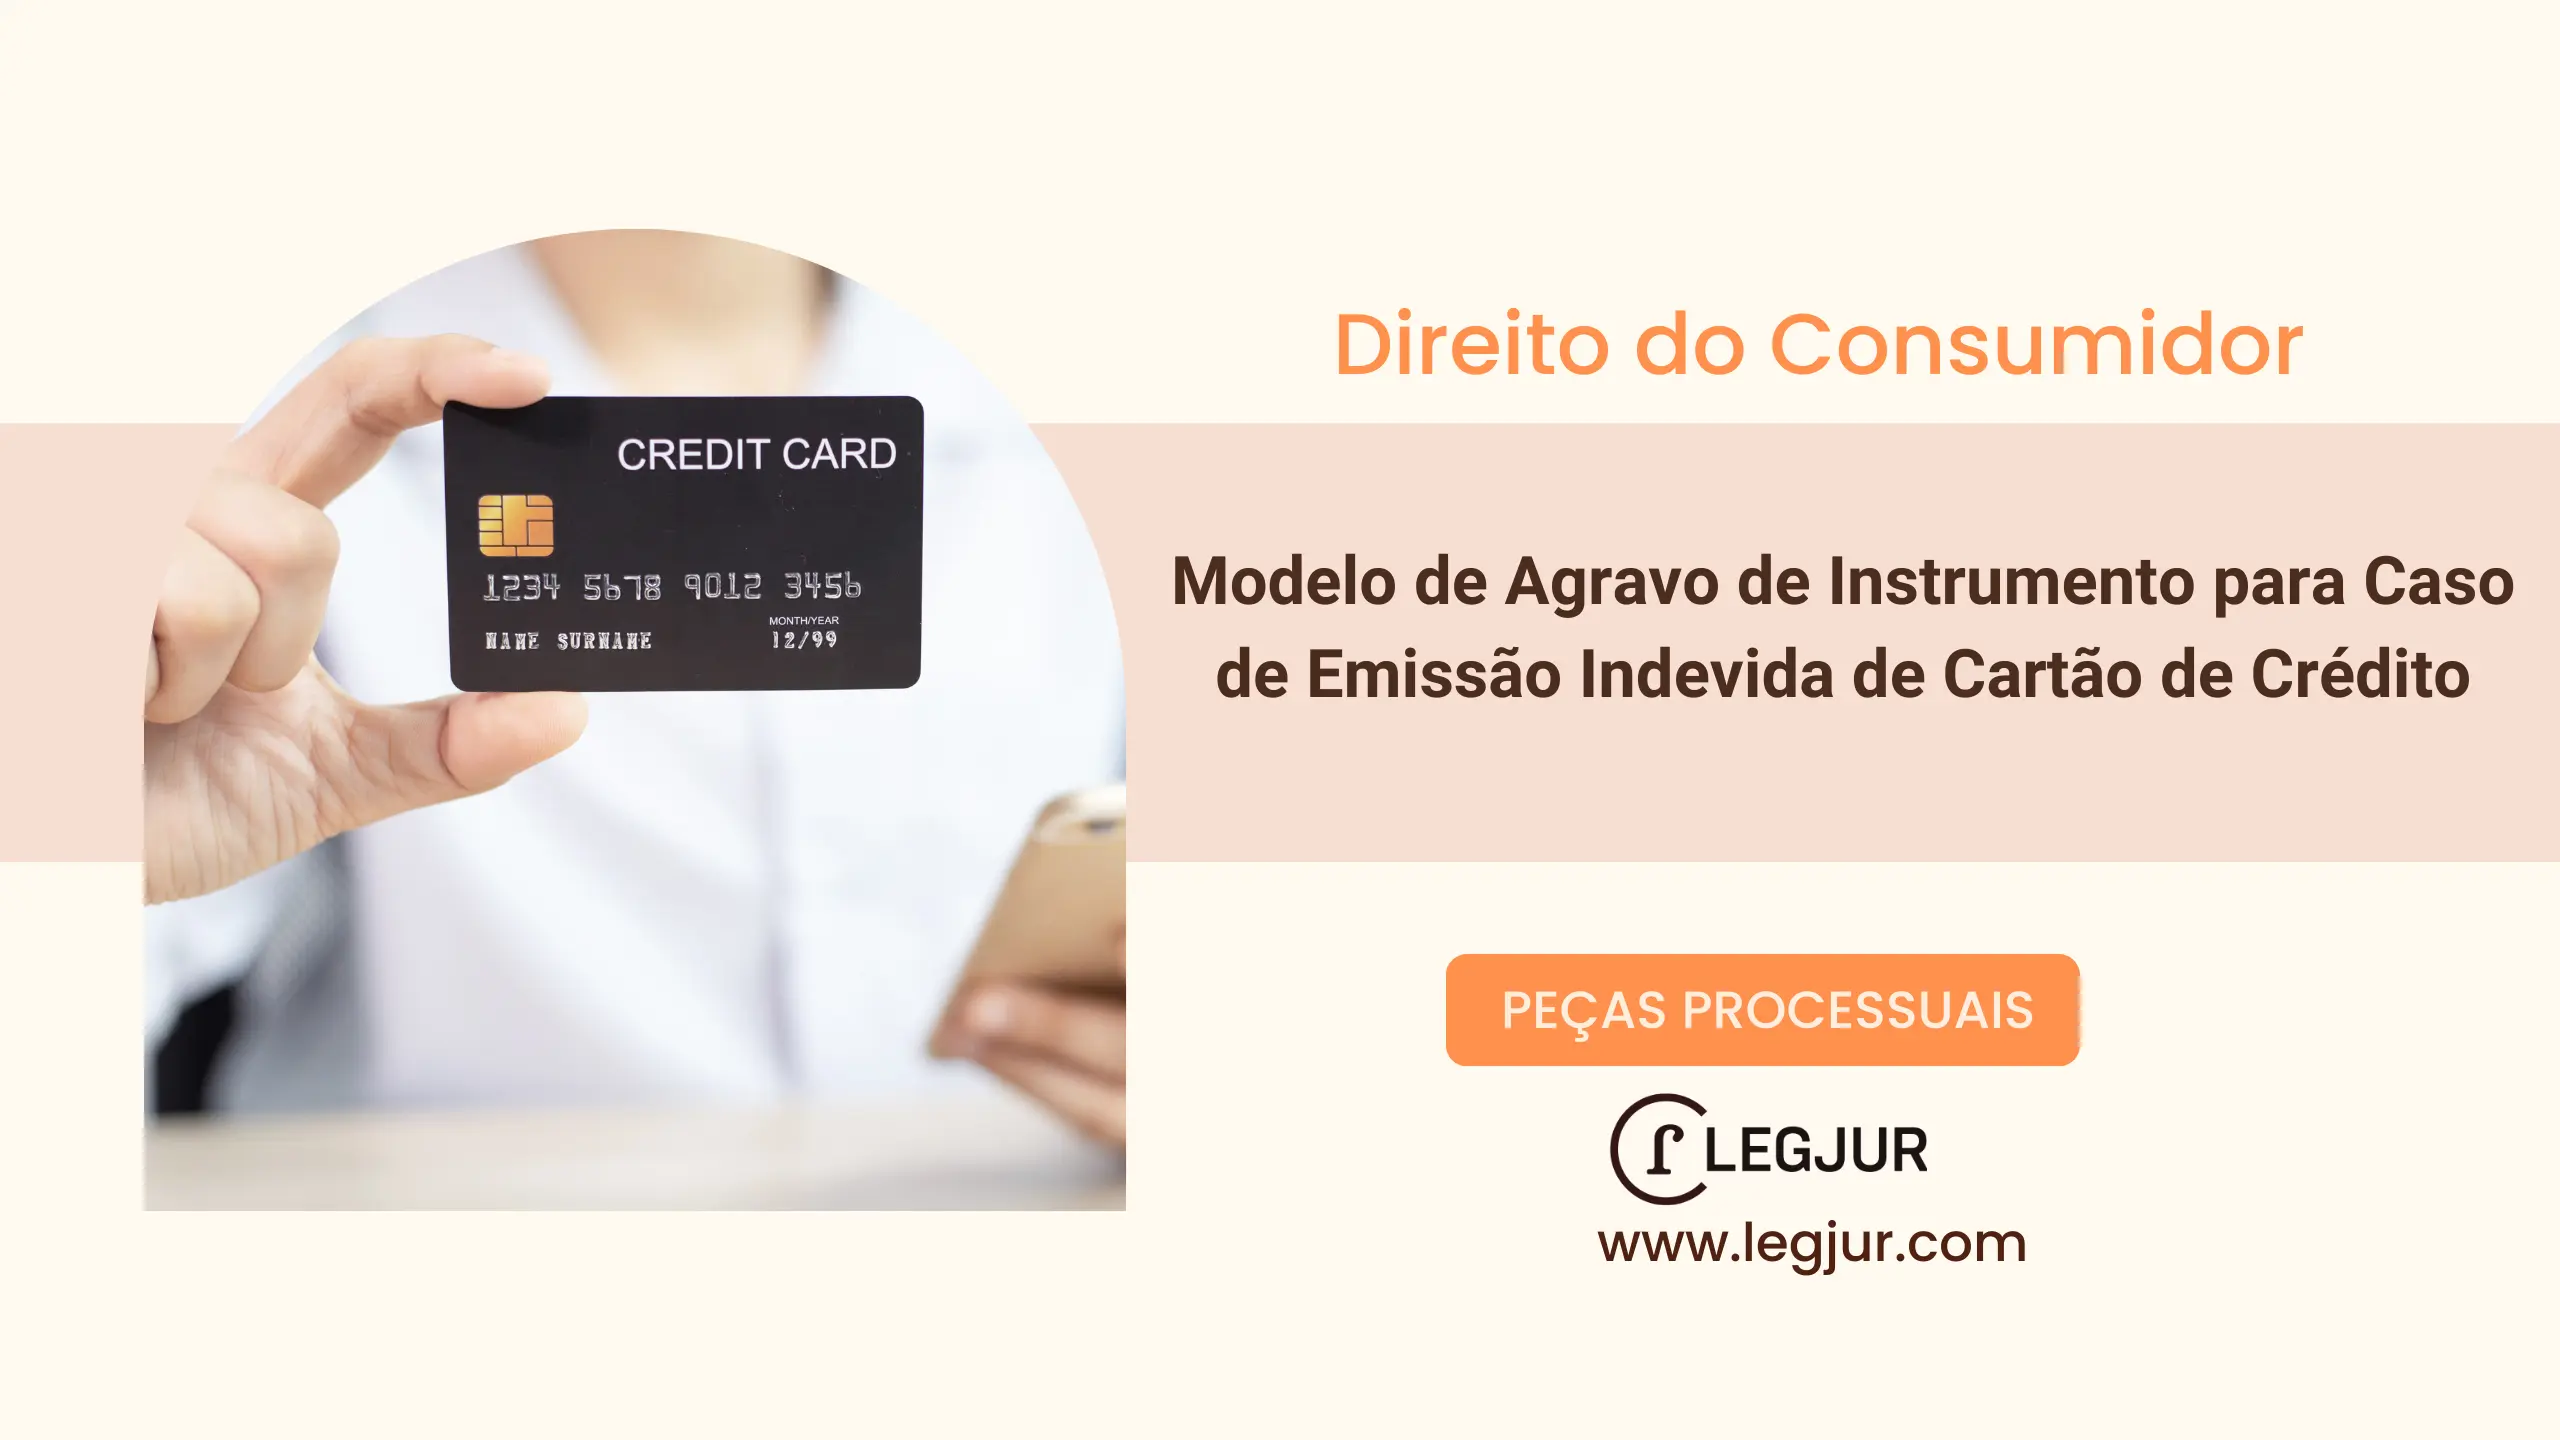 Modelo de Agravo de Instrumento para Caso de Emissão Indevida de Cartão de Crédito